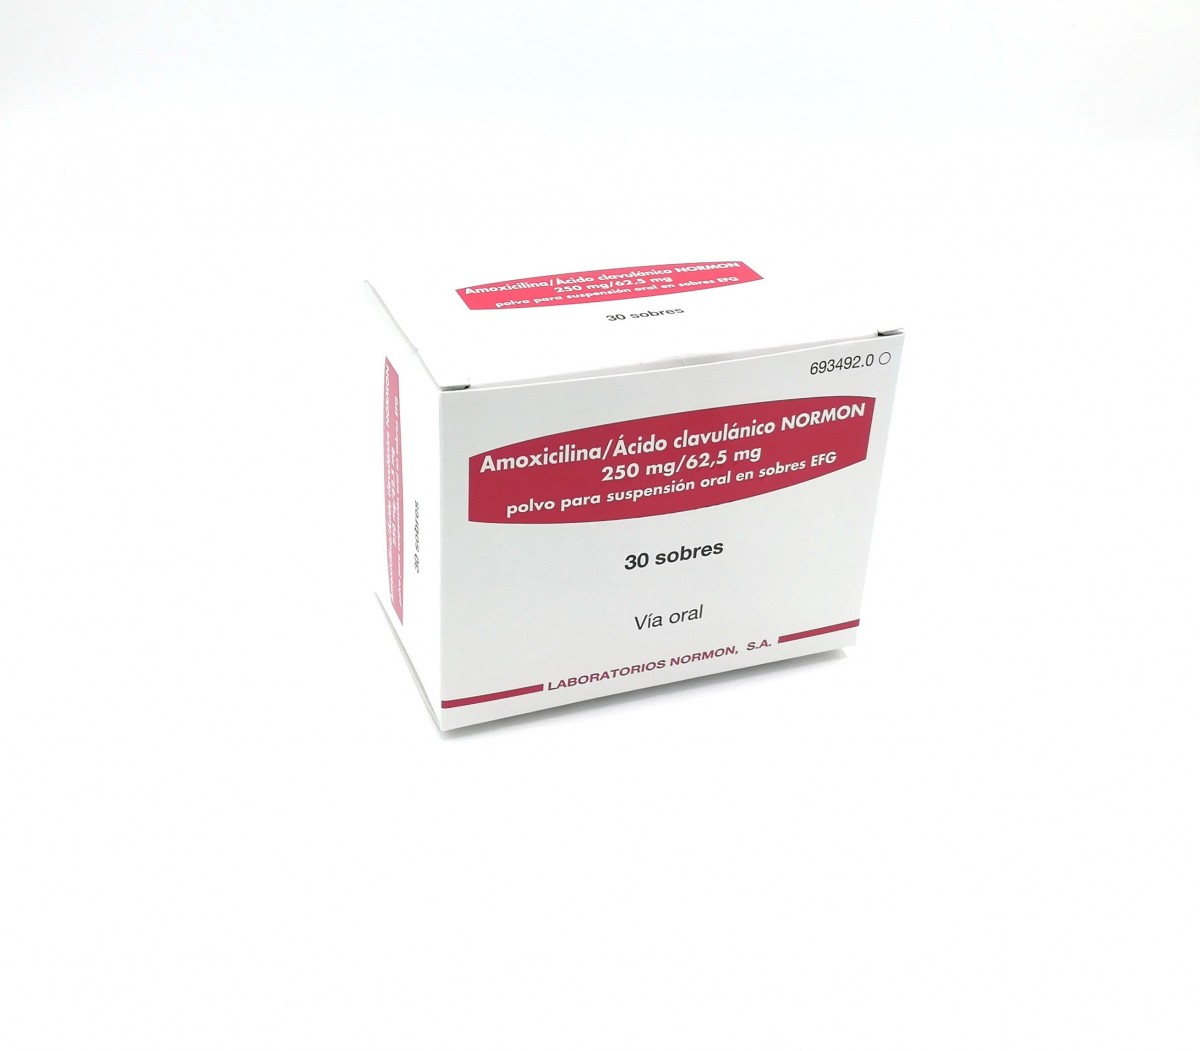 AMOXICILINA/ACIDO CLAVULANICO NORMON 250 mg/62,5 mg  POLVO PARA SUSPENSION ORAL EN SOBRES EFG, 500 sobres fotografía del envase.